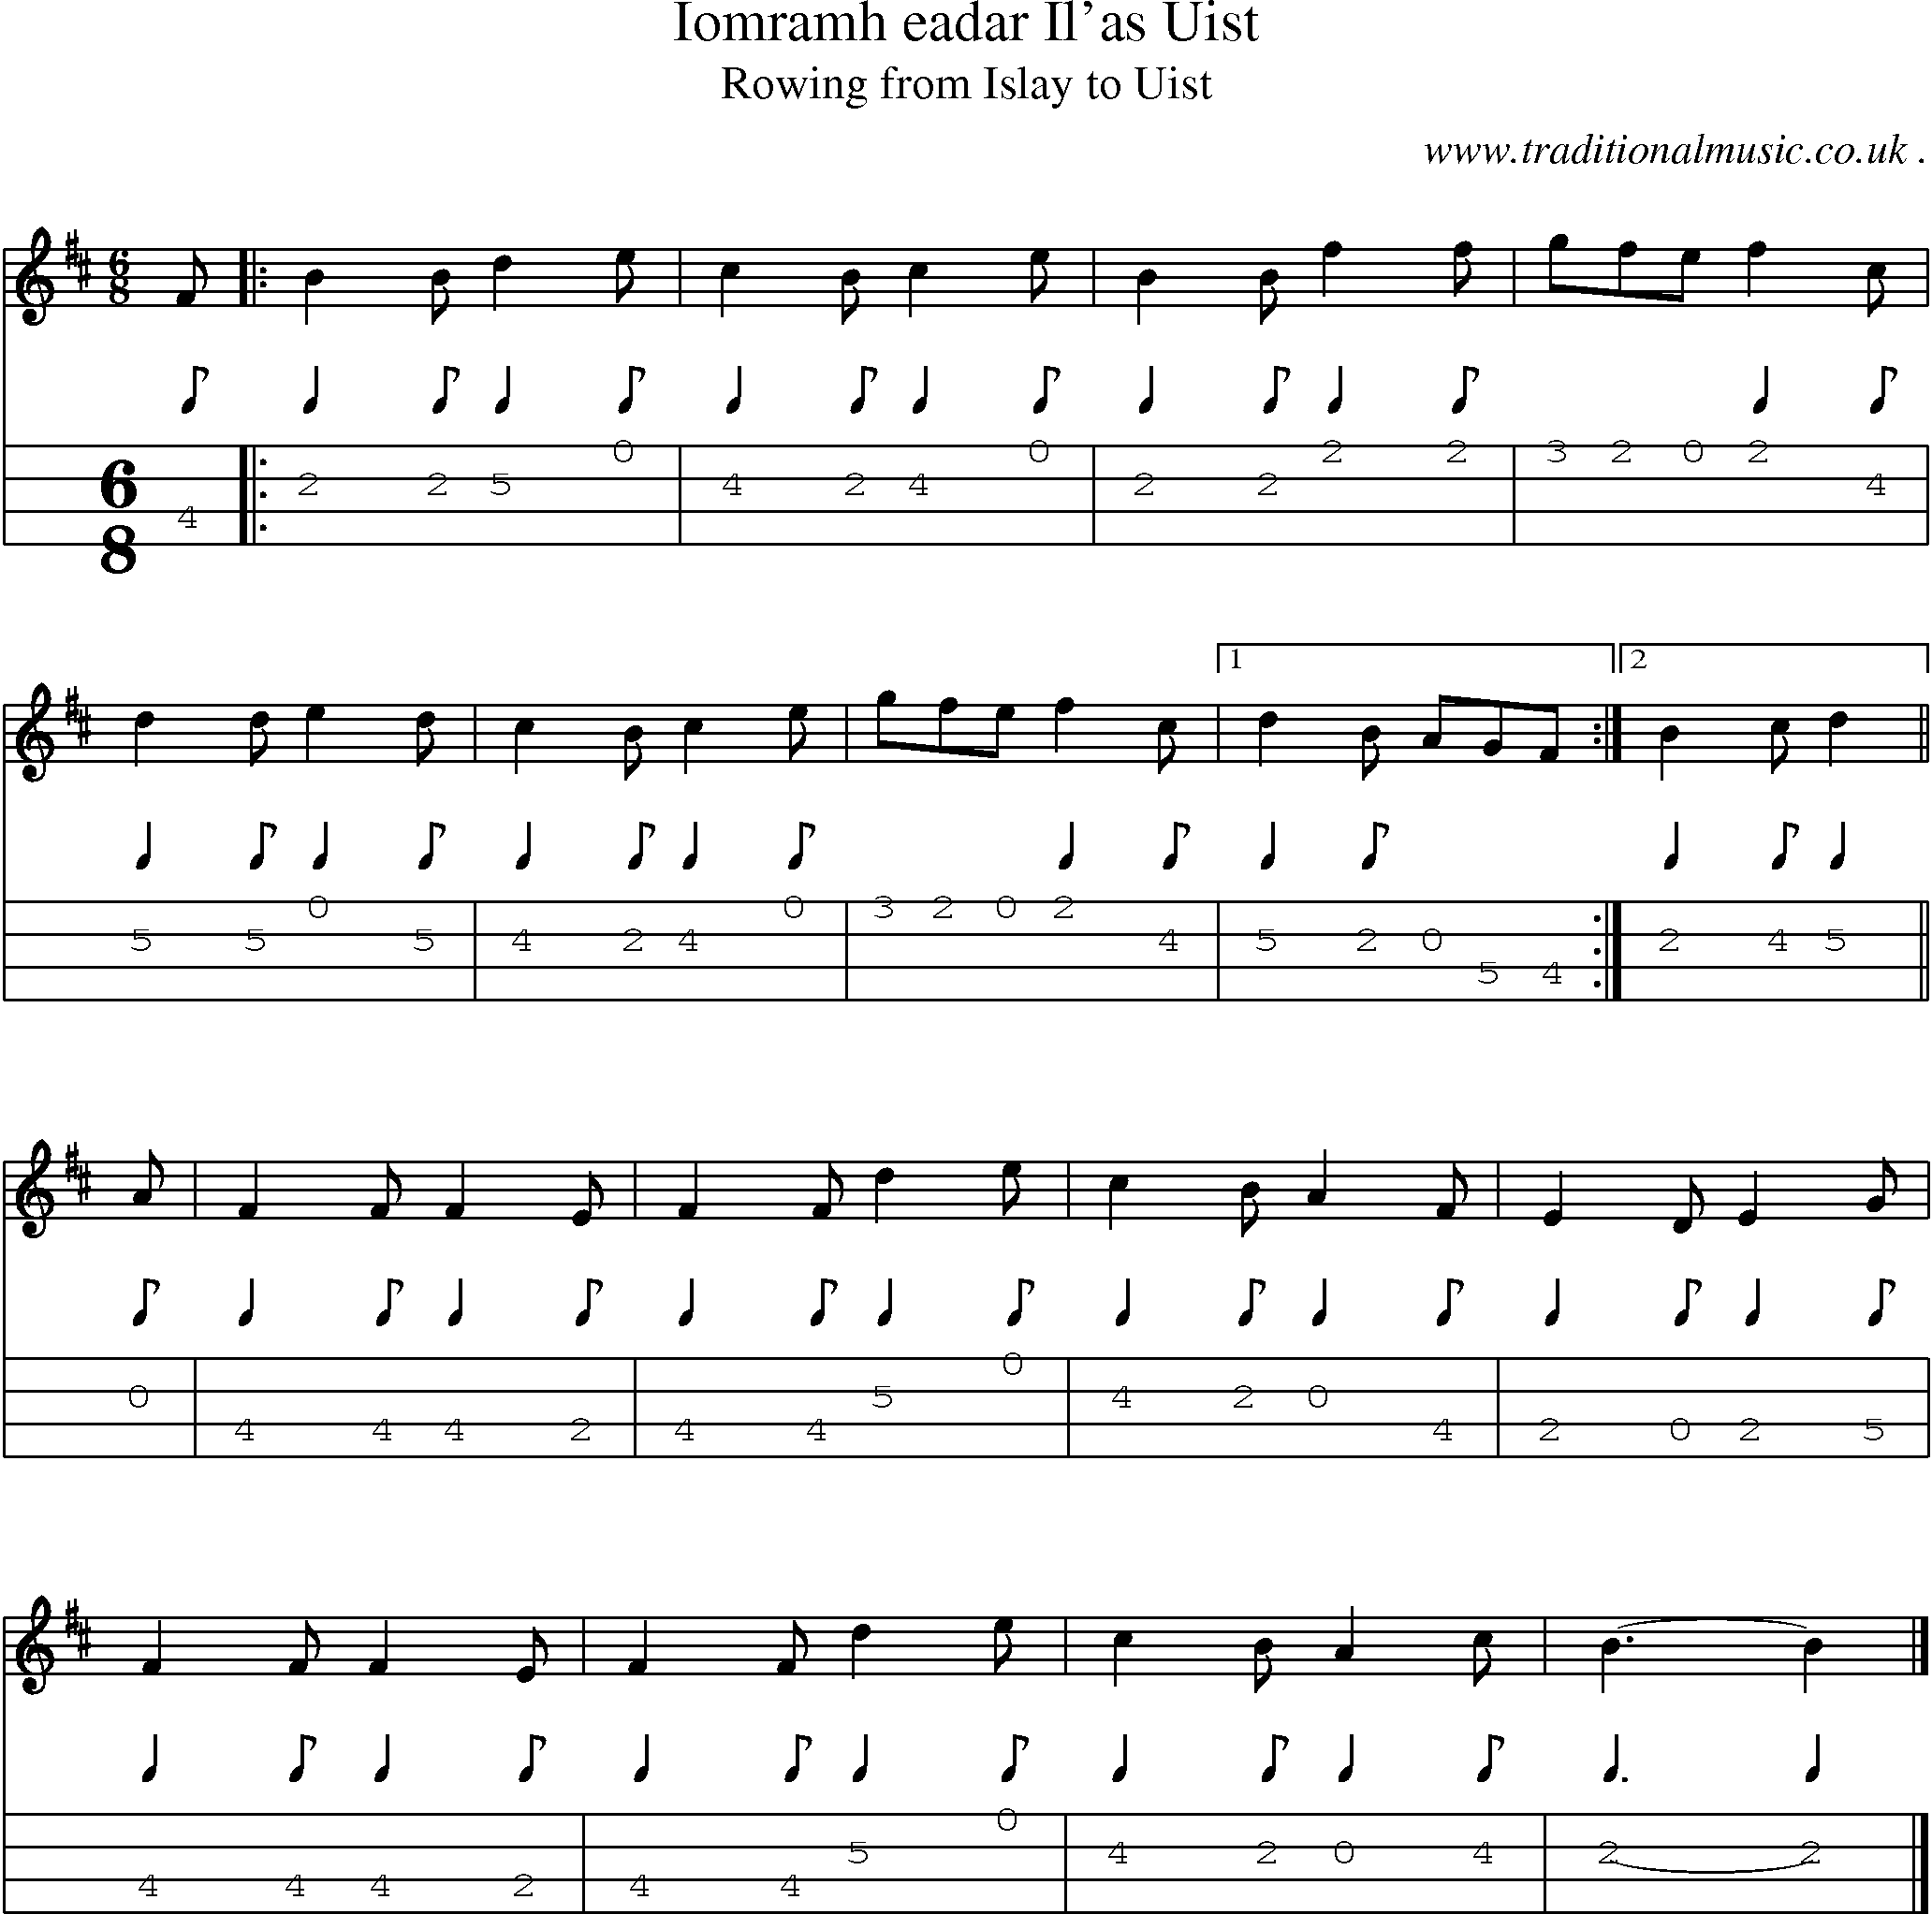 Sheet-music  score, Chords and Mandolin Tabs for Iomramh Eadar Ilas Uist